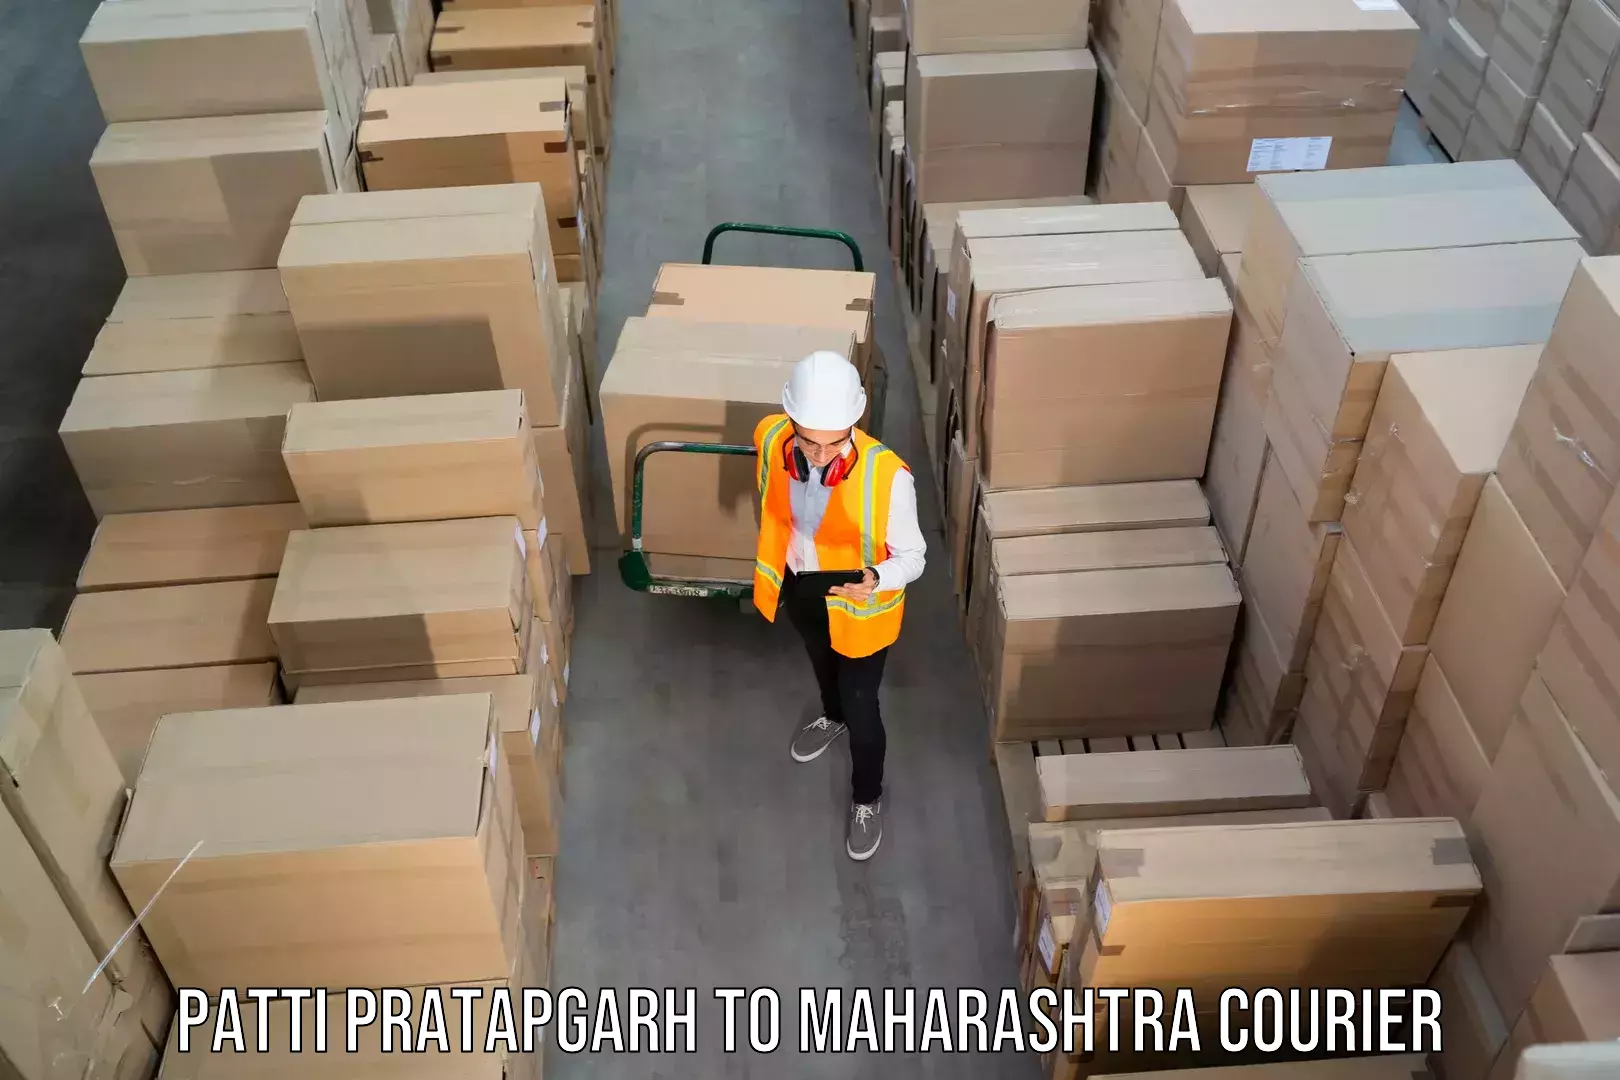 Reliable package handling Patti Pratapgarh to Koregaon